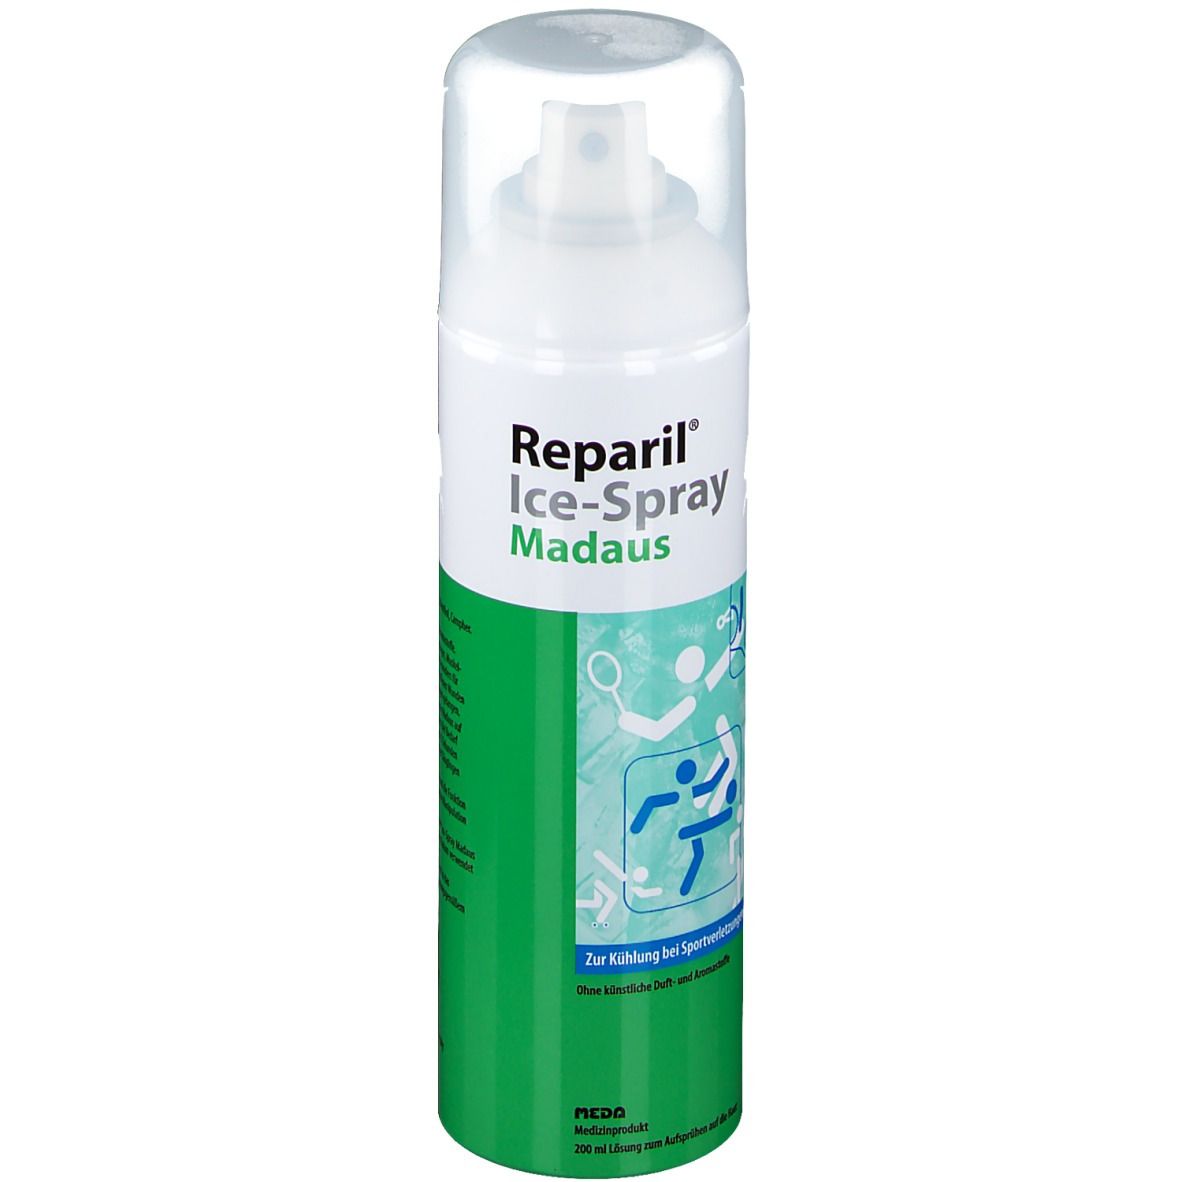 Image of Reparil® Ice-Spray Madaus